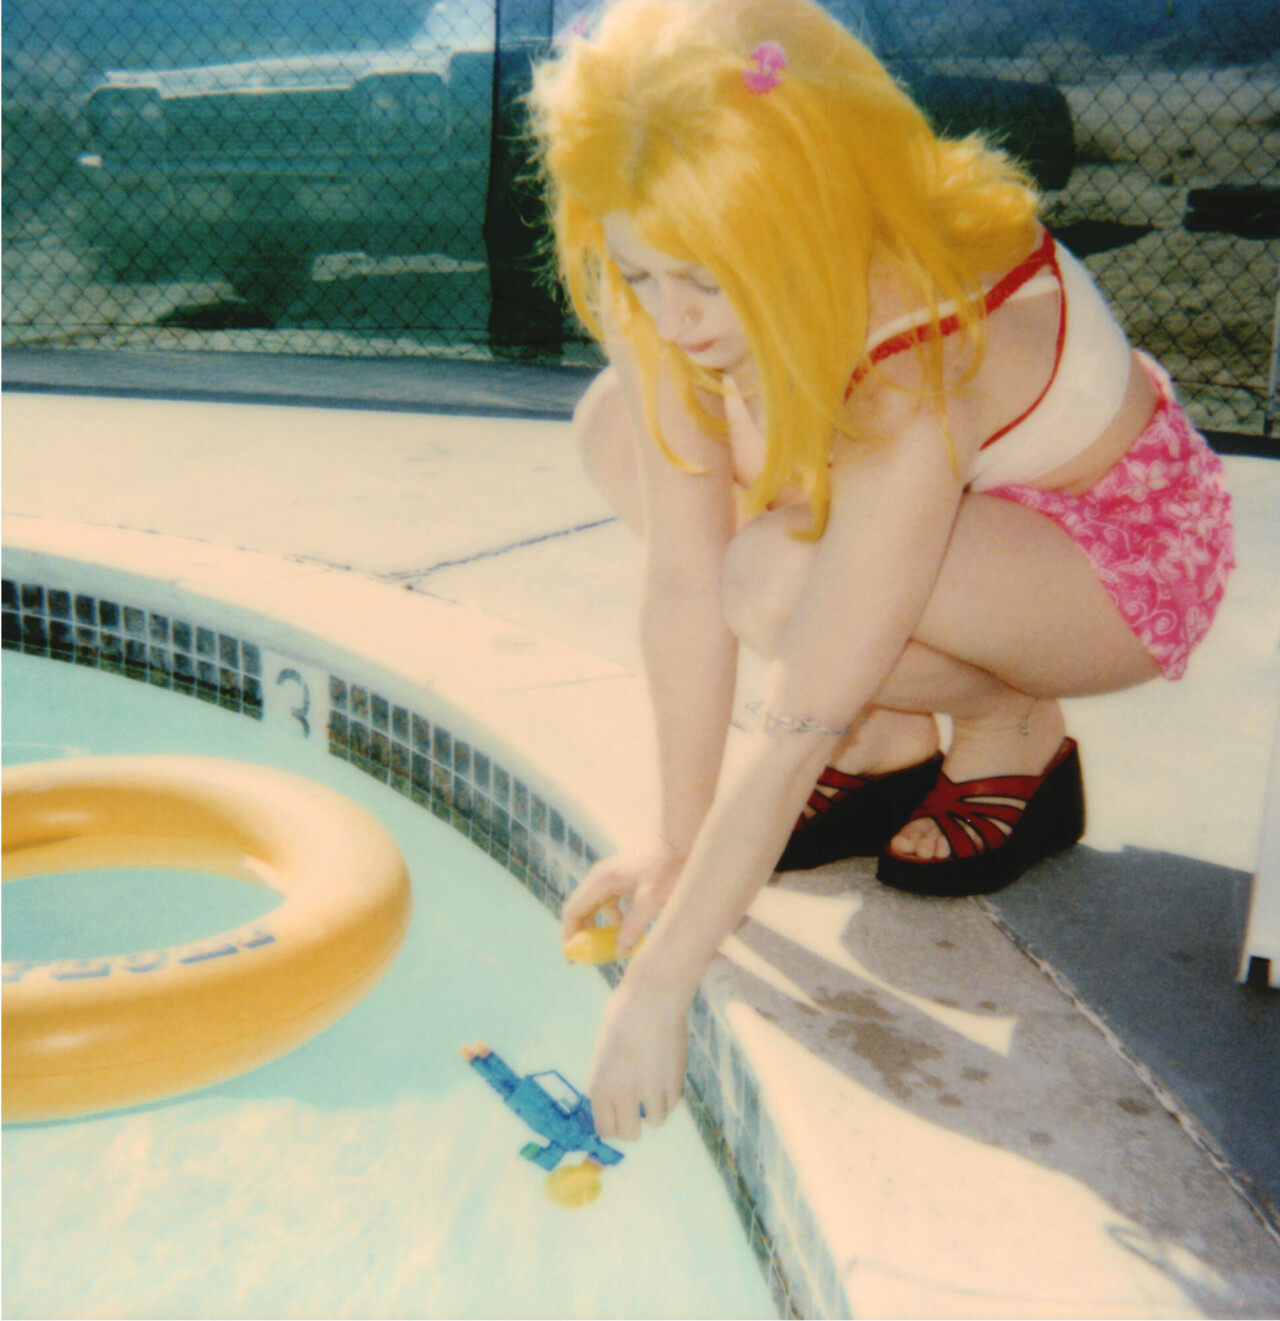 Макс у бассейна (29 Palms, Калифорния), 1999 г., полароид. Фотограф Стефани Шнайдер